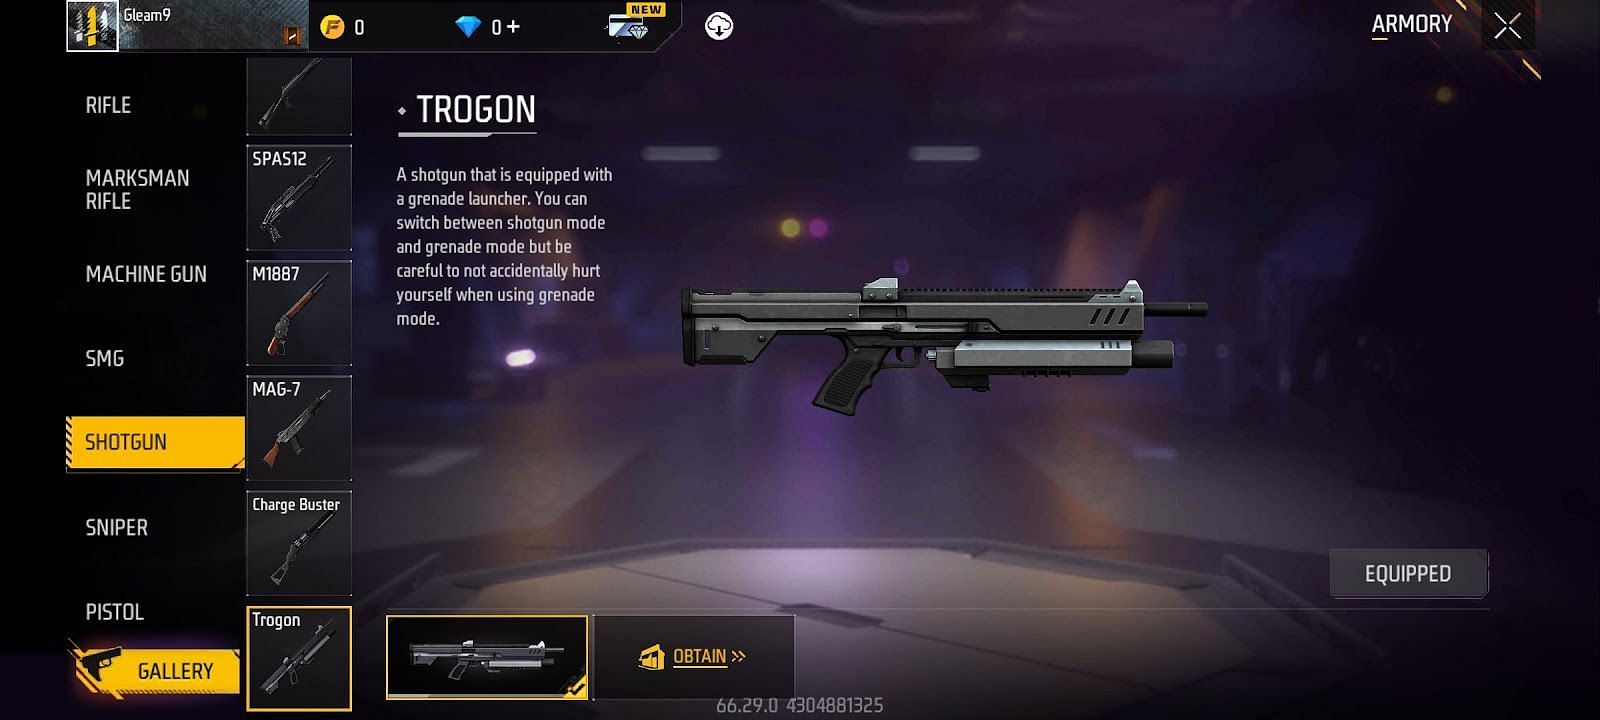 Trogon Shotgun (Image via Garena)